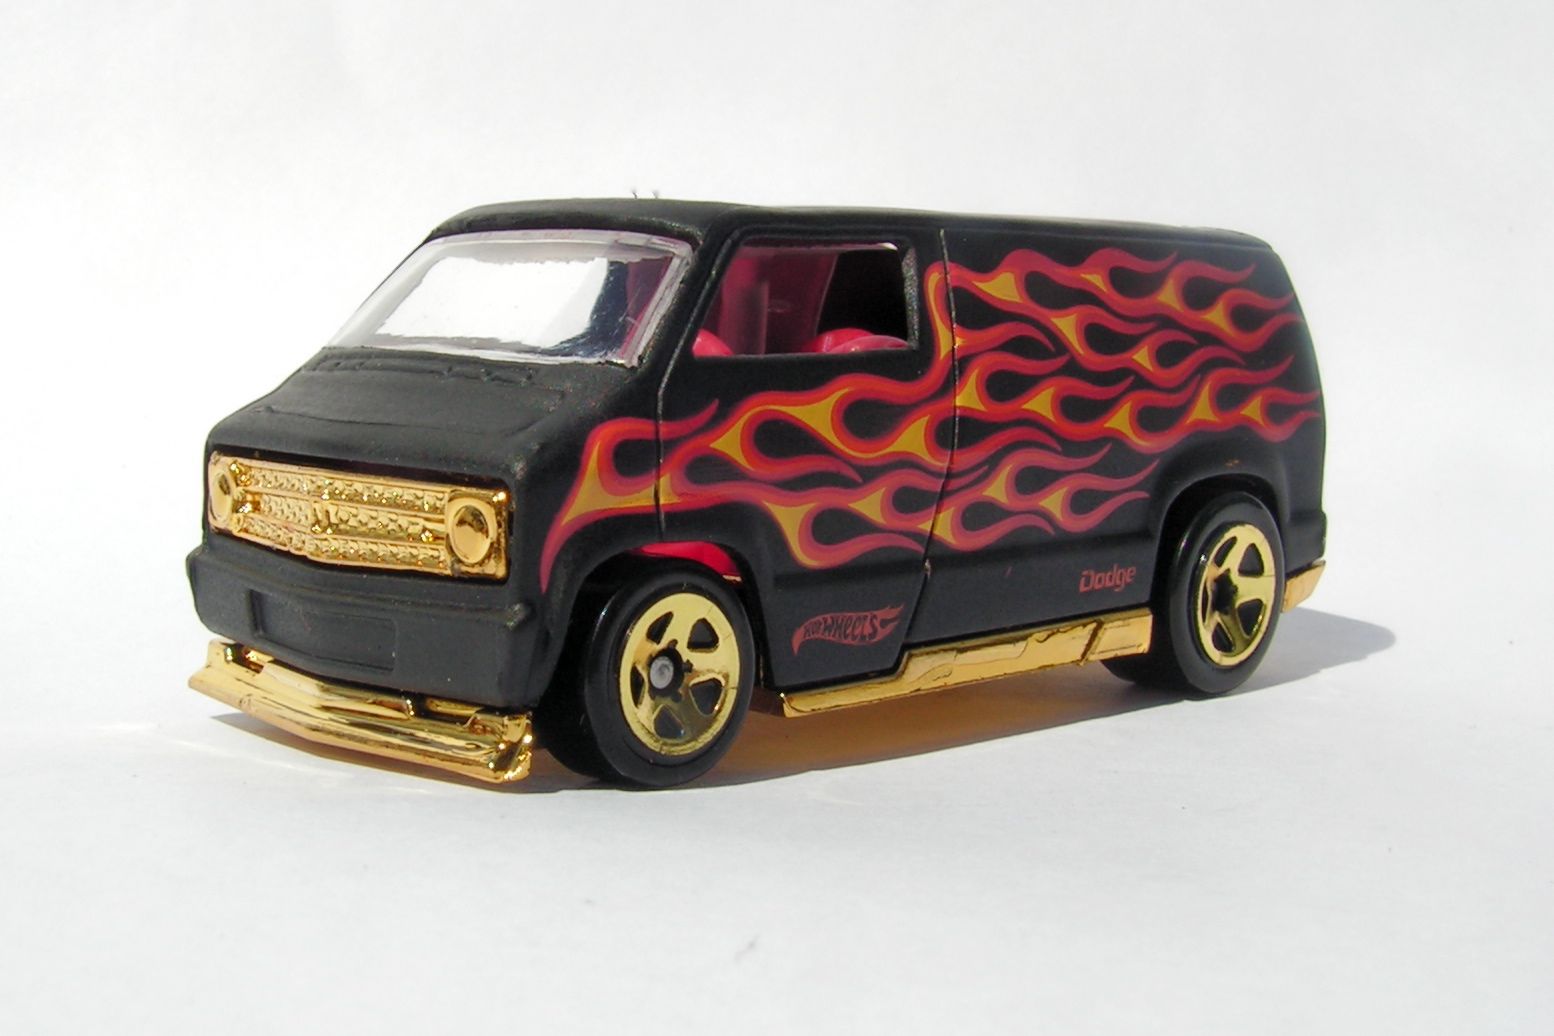 van with flames